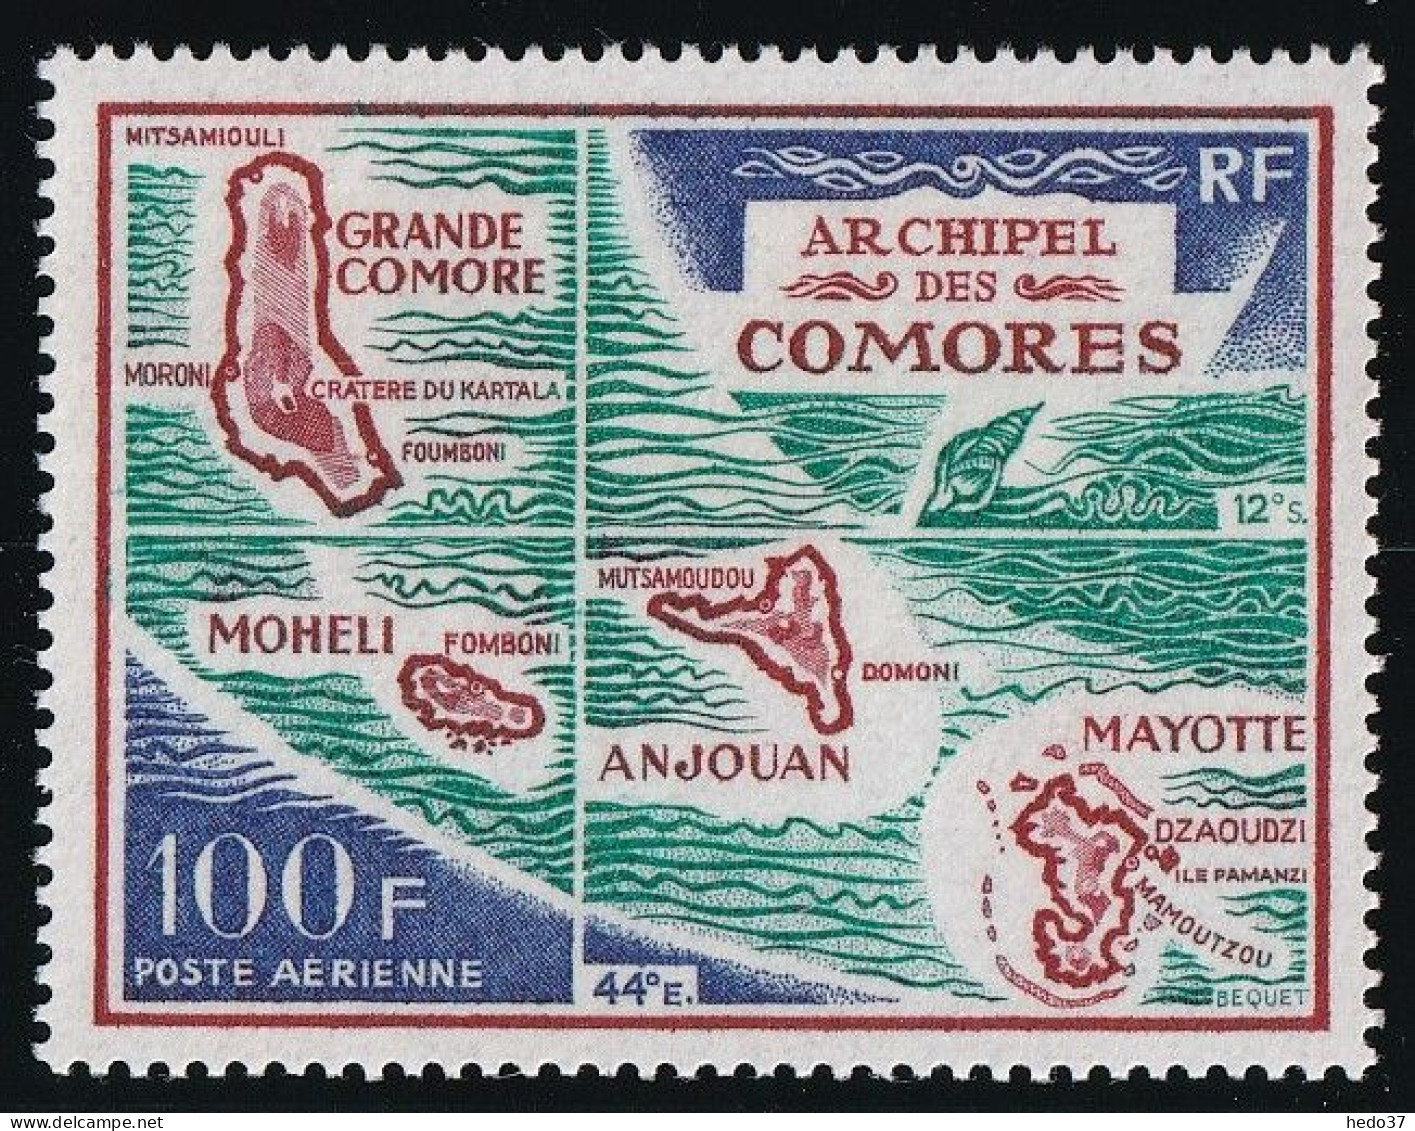 Comores Poste Aérienne N°36 - Neuf ** Sans Charnière - TB - Poste Aérienne